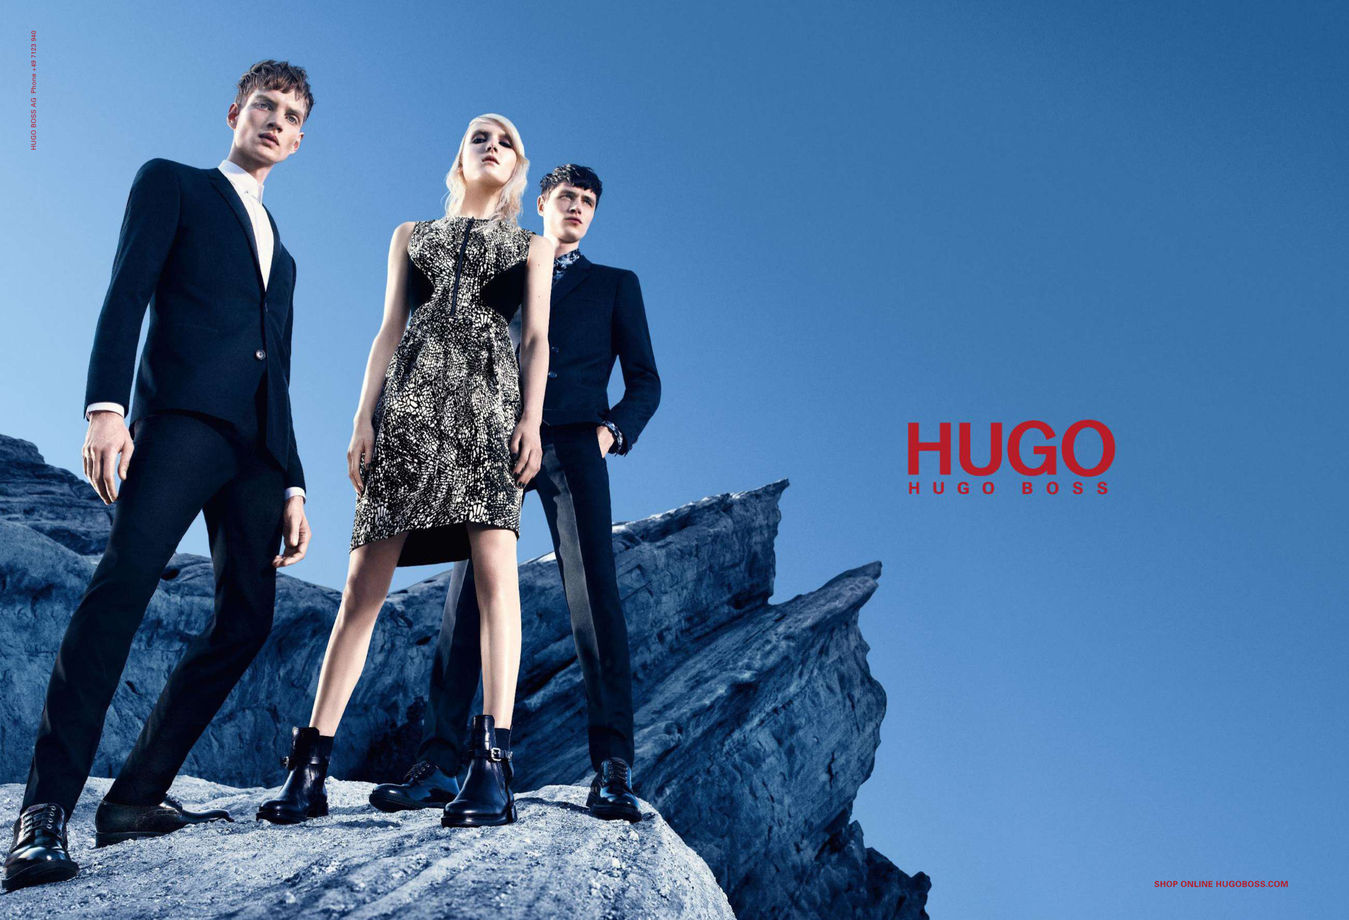 Hugo com. Hugo Boss Black Label. Босс Хьюго босс одежда. Модный дом Hugo Boss. Хьюго Хьюго босс одежда.